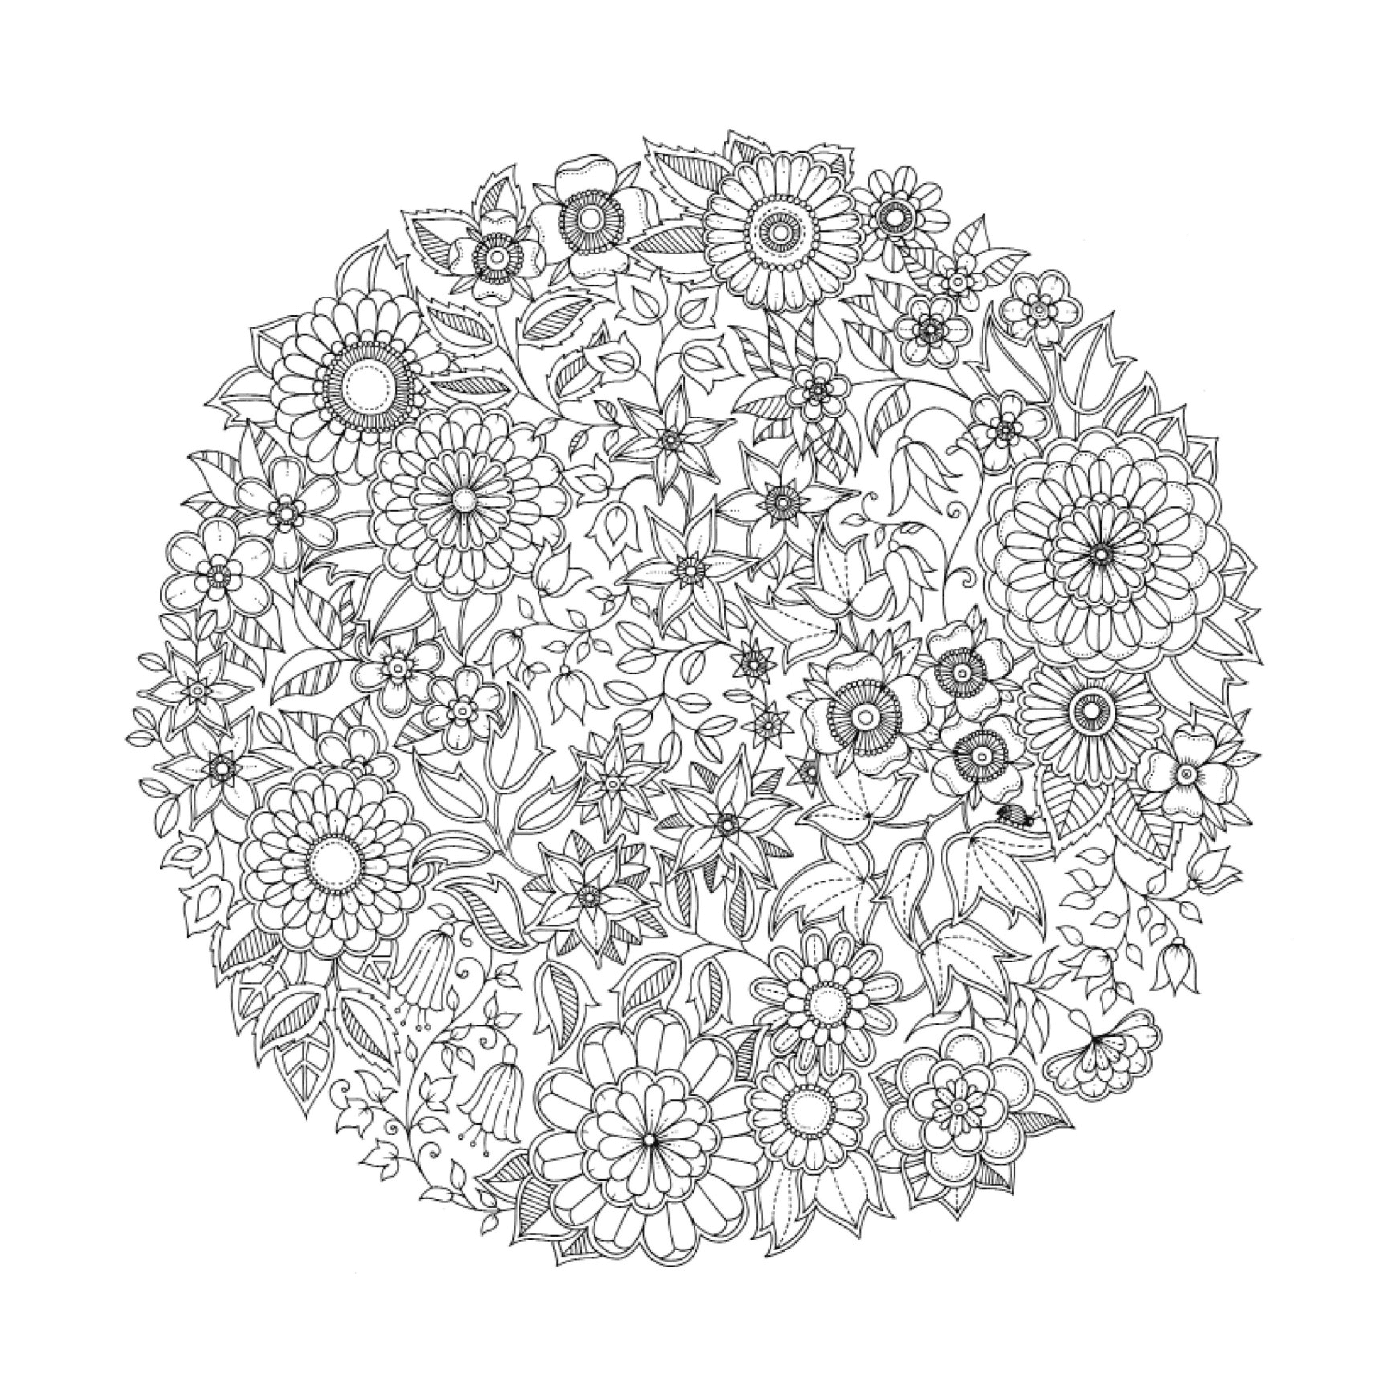  Modelo circular de flores en blanco y negro 